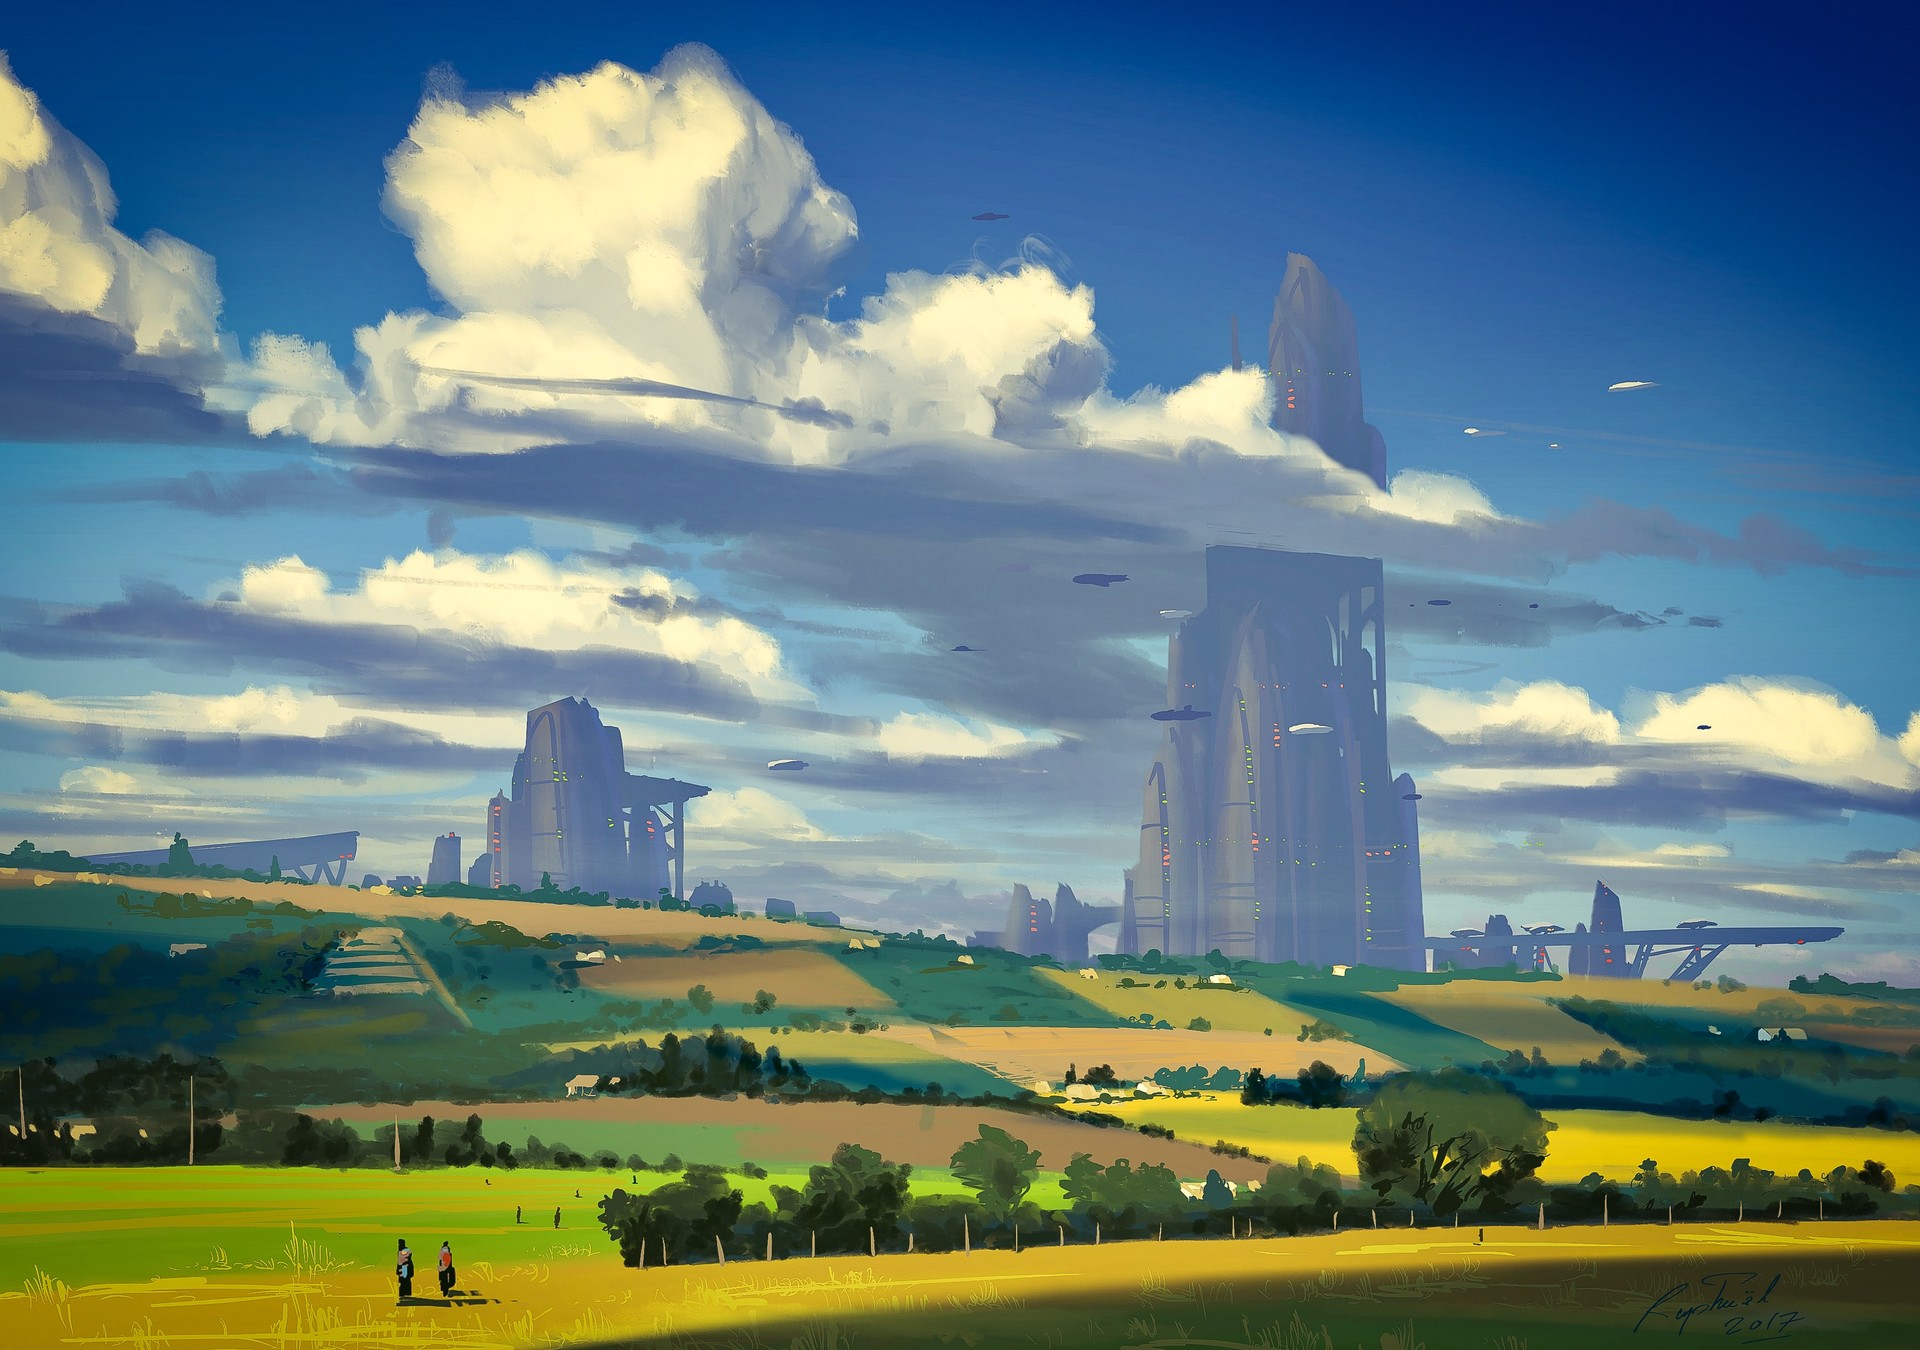 sci fi, landscape, building, cloud, countryside, sky, skyscraper, tree